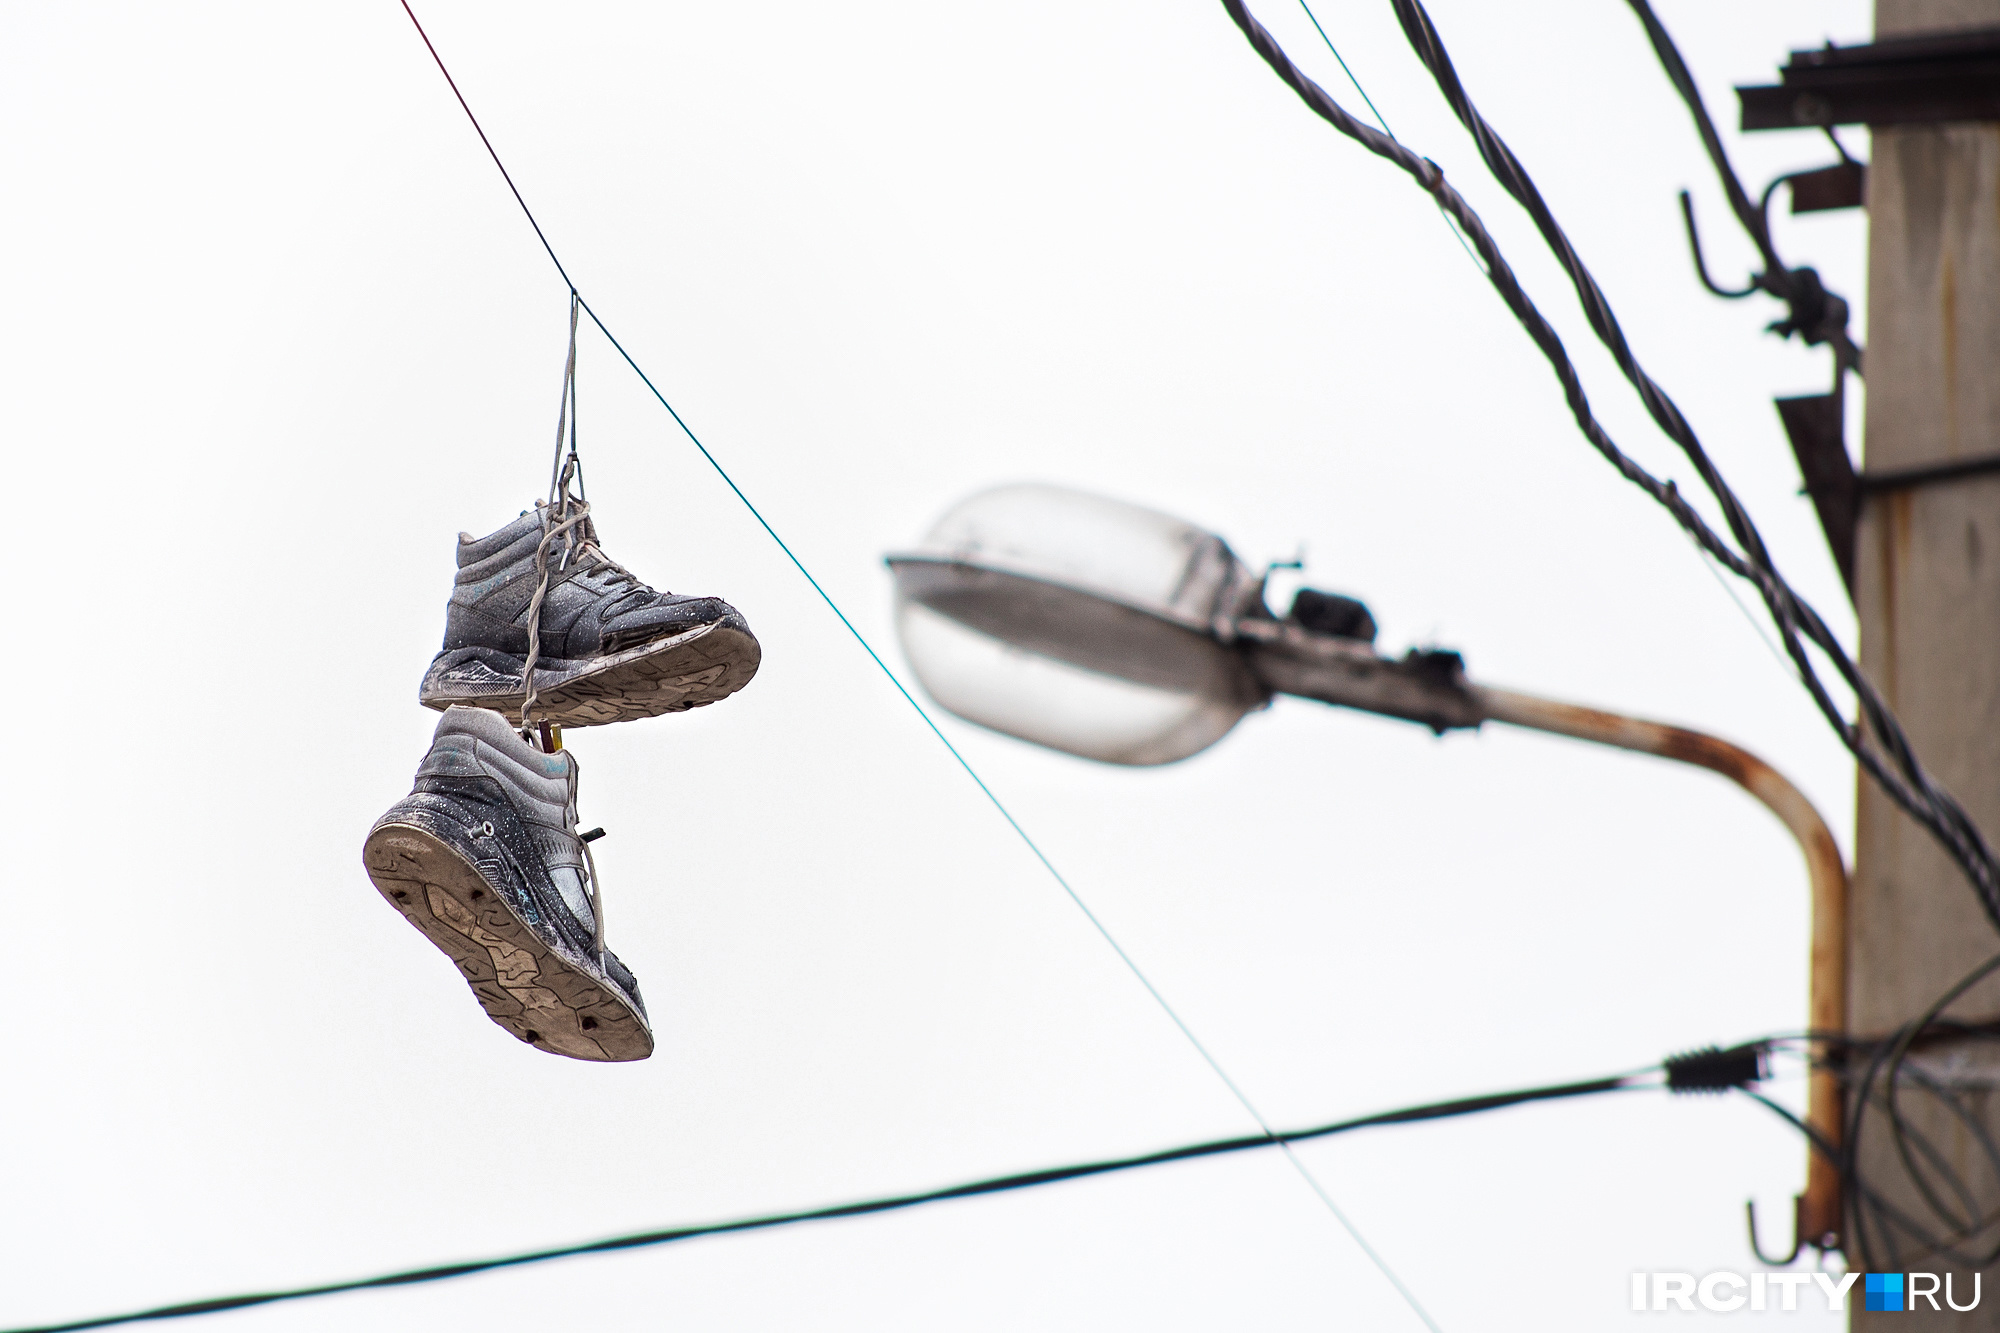 Закинутые на провода кроссовки — как воспоминания о прошлом лете